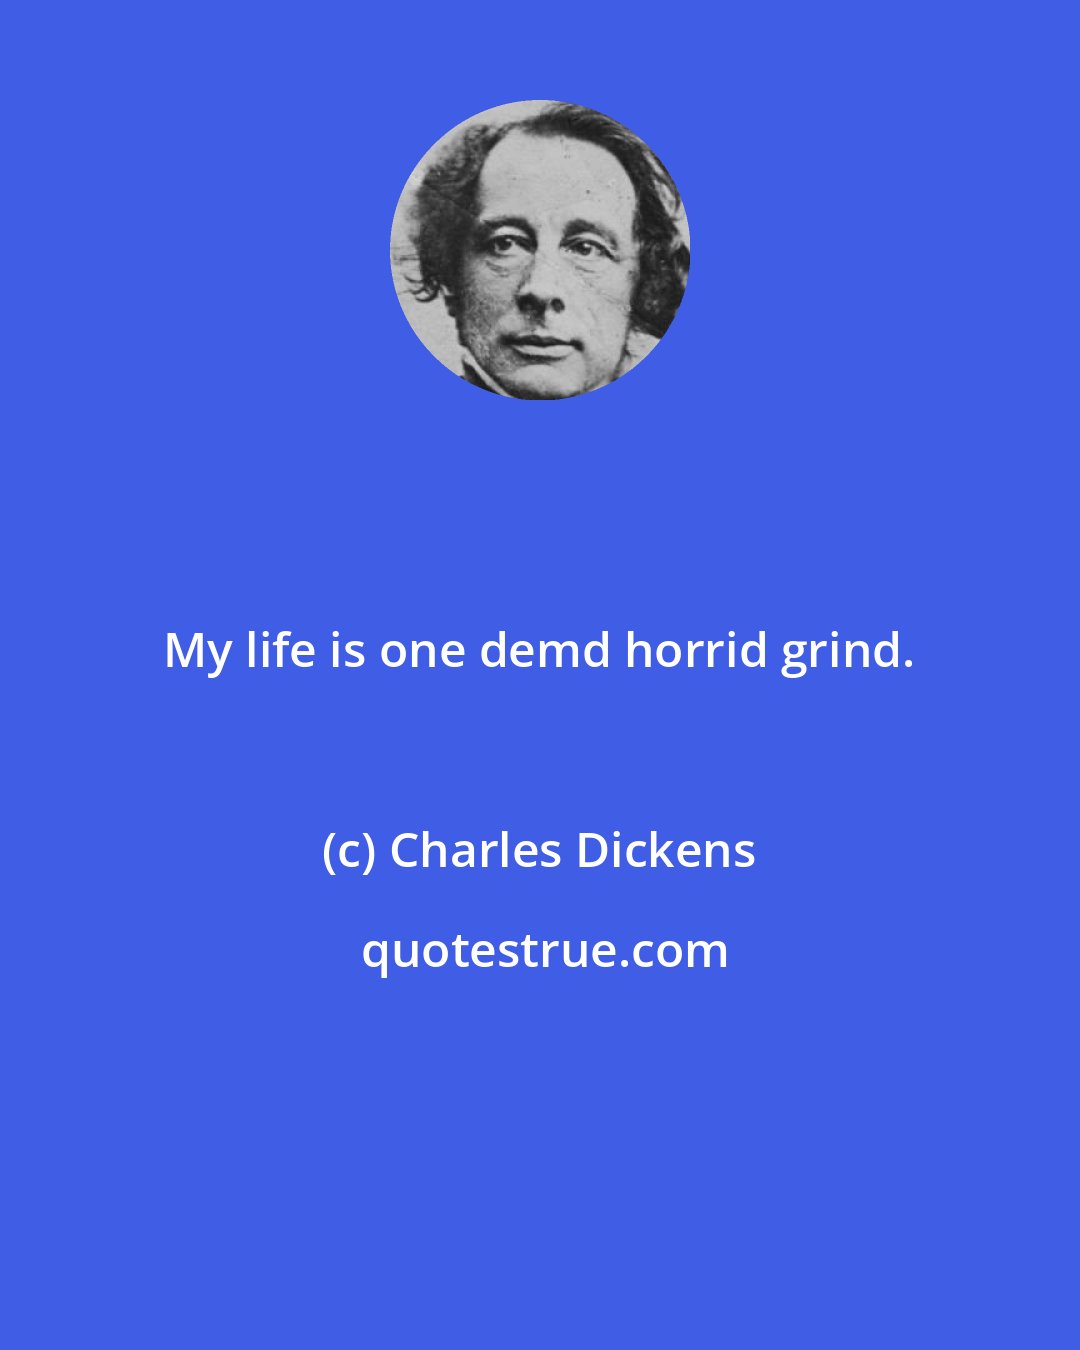 Charles Dickens: My life is one demd horrid grind.